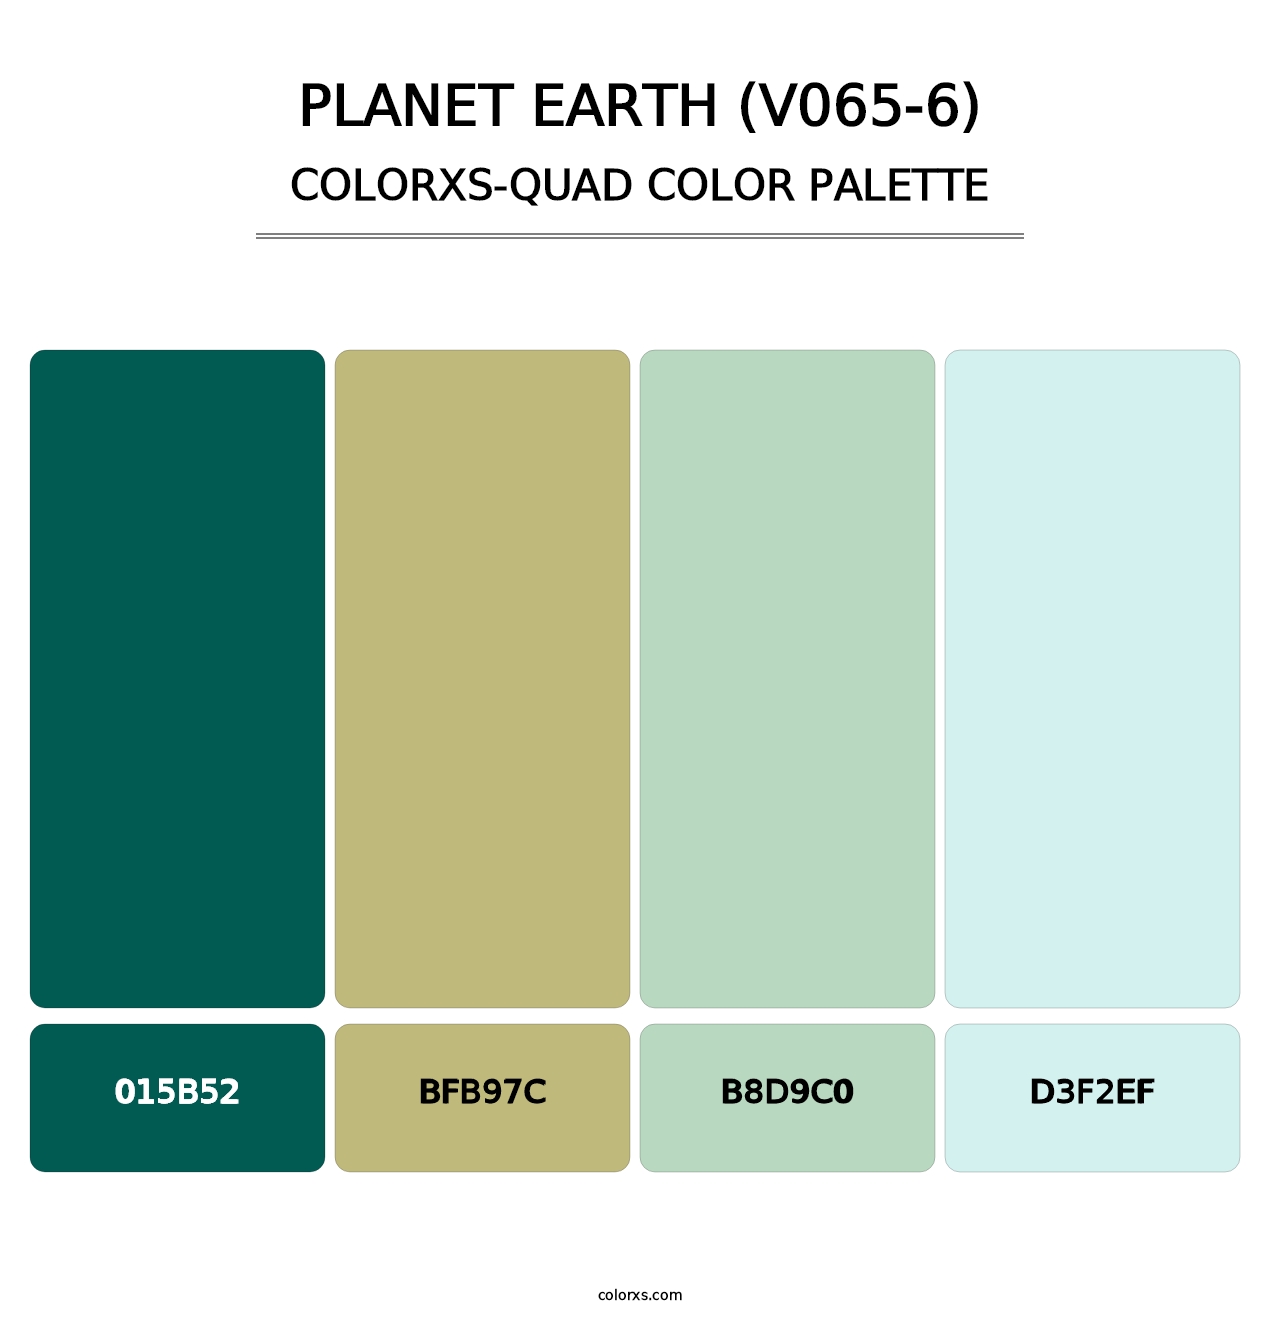 Planet Earth (V065-6) - Colorxs Quad Palette